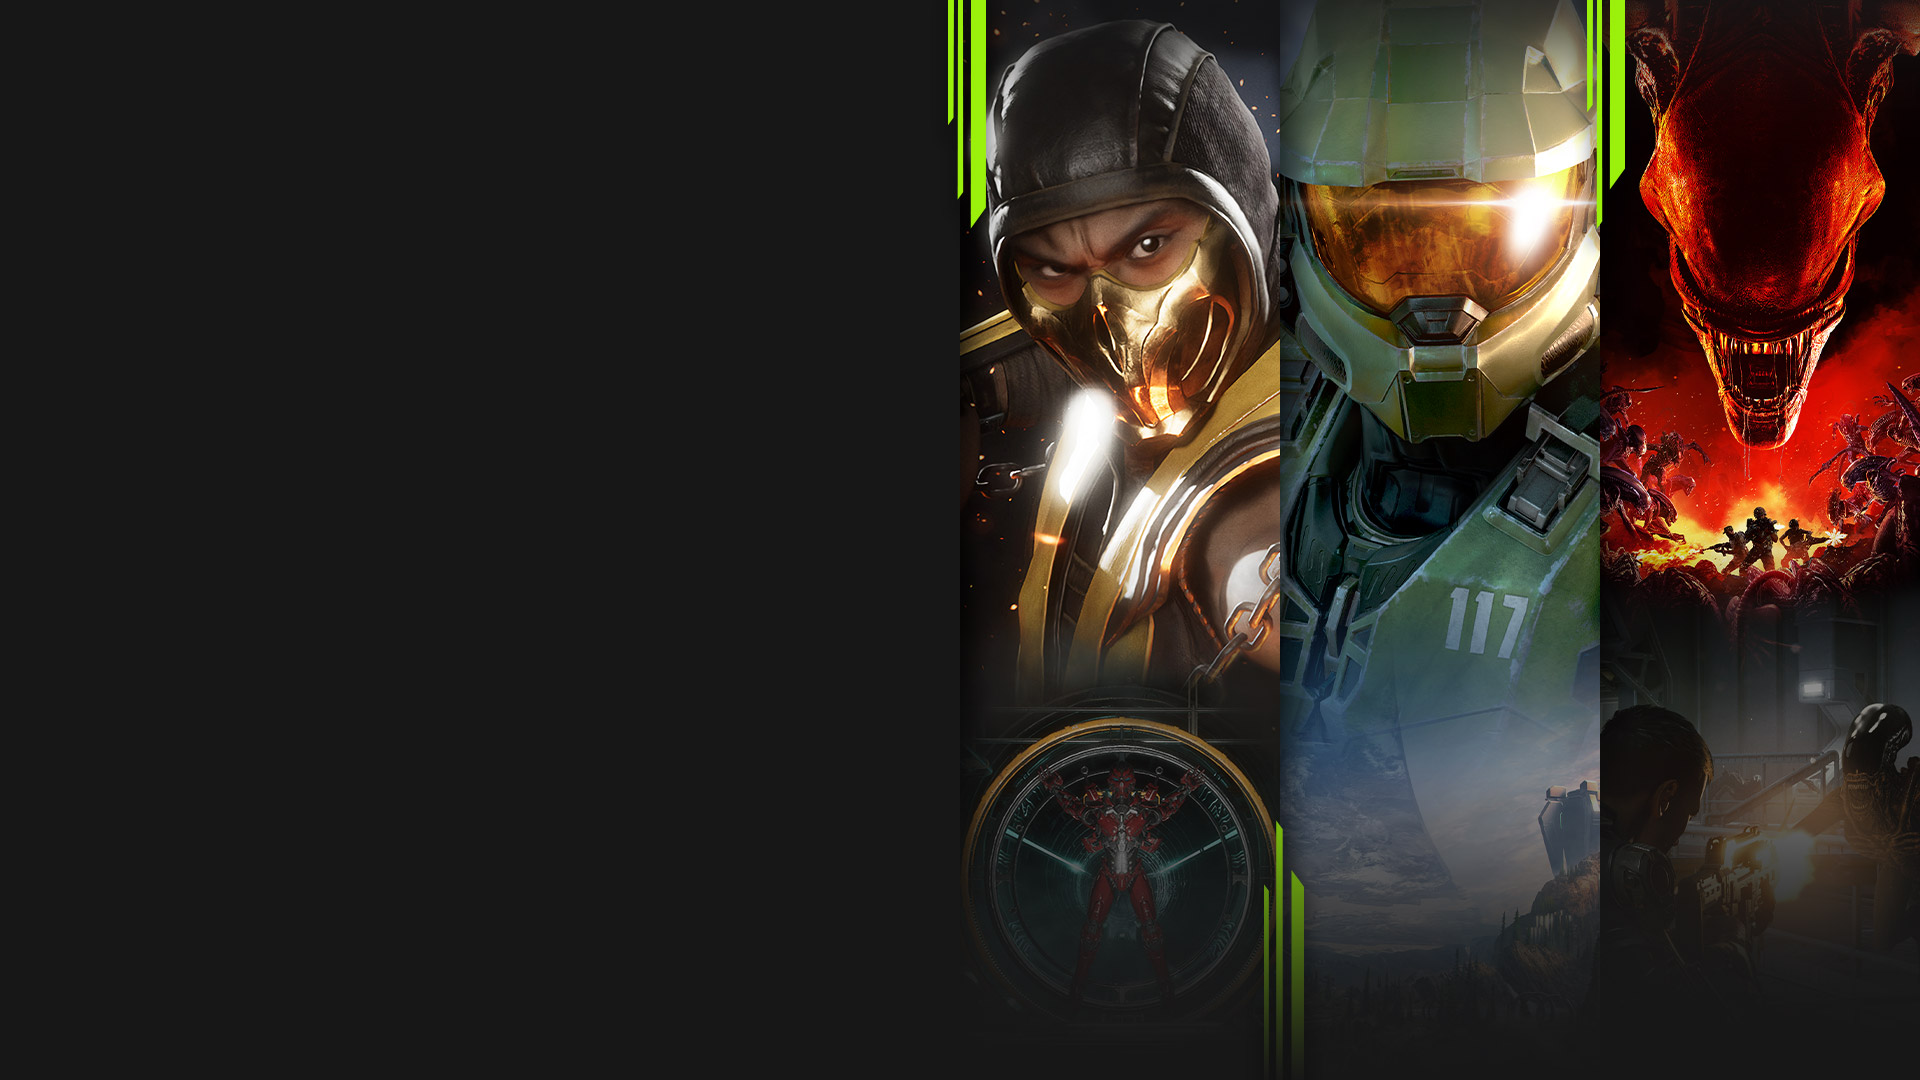 Arte de vários jogos disponíveis agora com o Xbox Game Pass, incluindo Mortal Kombat 11, Halo Infinite, Aliens: Fireteam Elite e Warhammer 40.000: Battlesector.